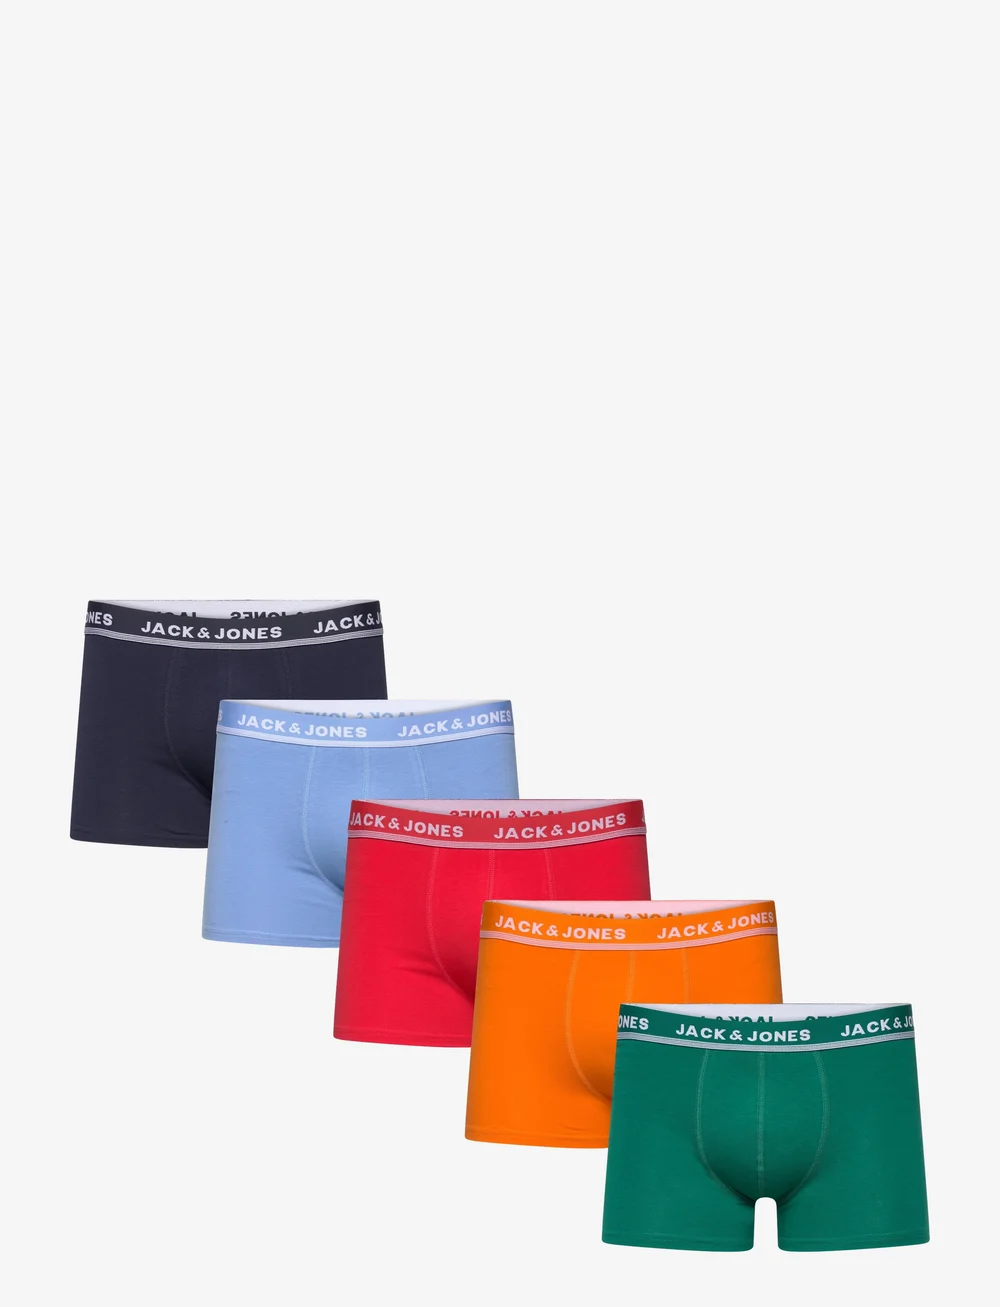 Jack & Jones Jaccolorful Kent Trunks 5 Pack – underpants – shop at